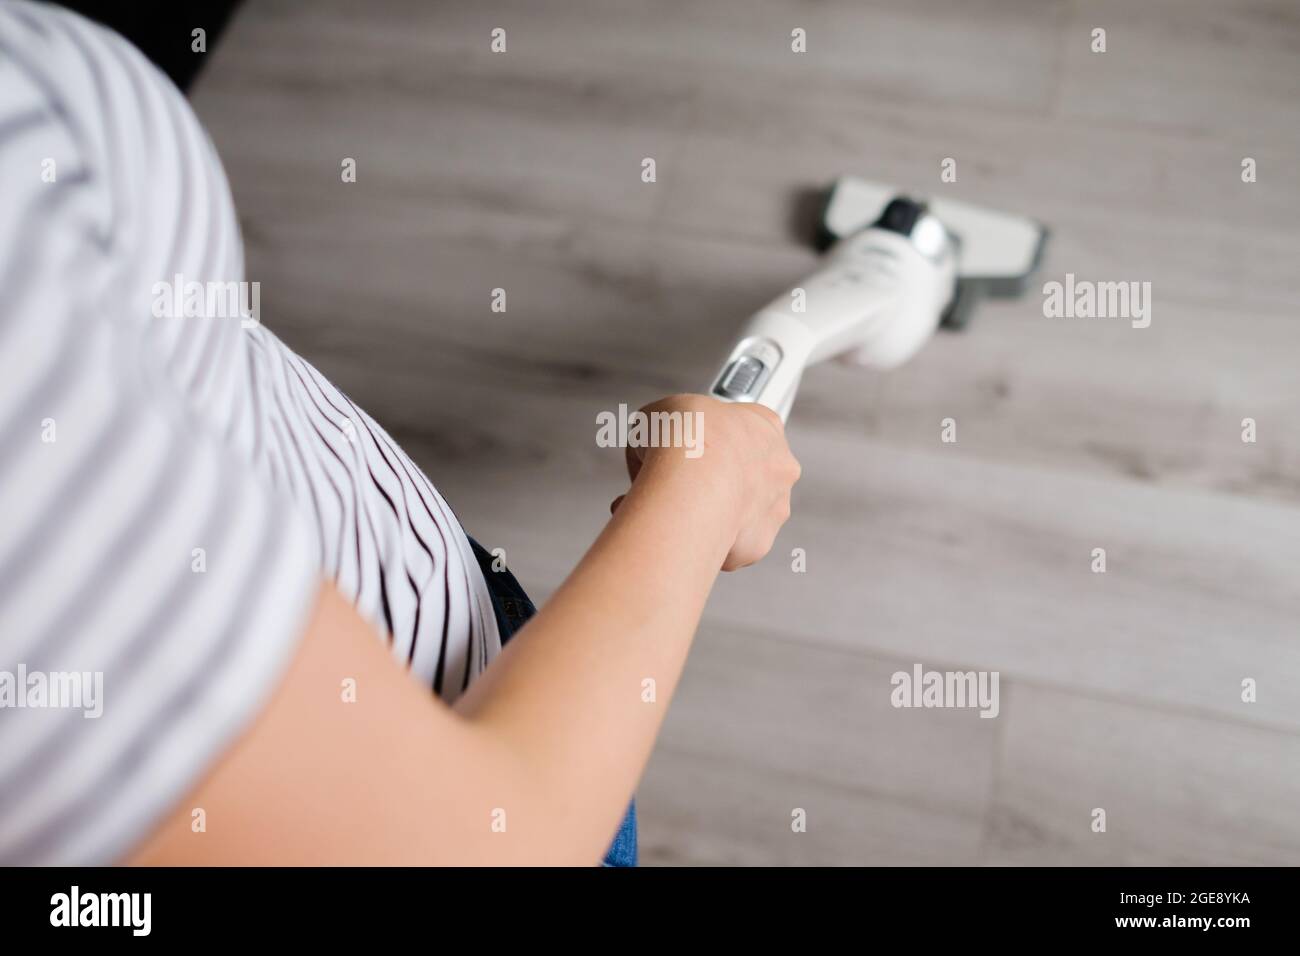 Una Persona Usa Una Aspiradora Sin Cables Blanca Para Limpiar El Sofá De La  Sala De Estar. Imagen de archivo - Imagen de interior, doméstico: 232585175